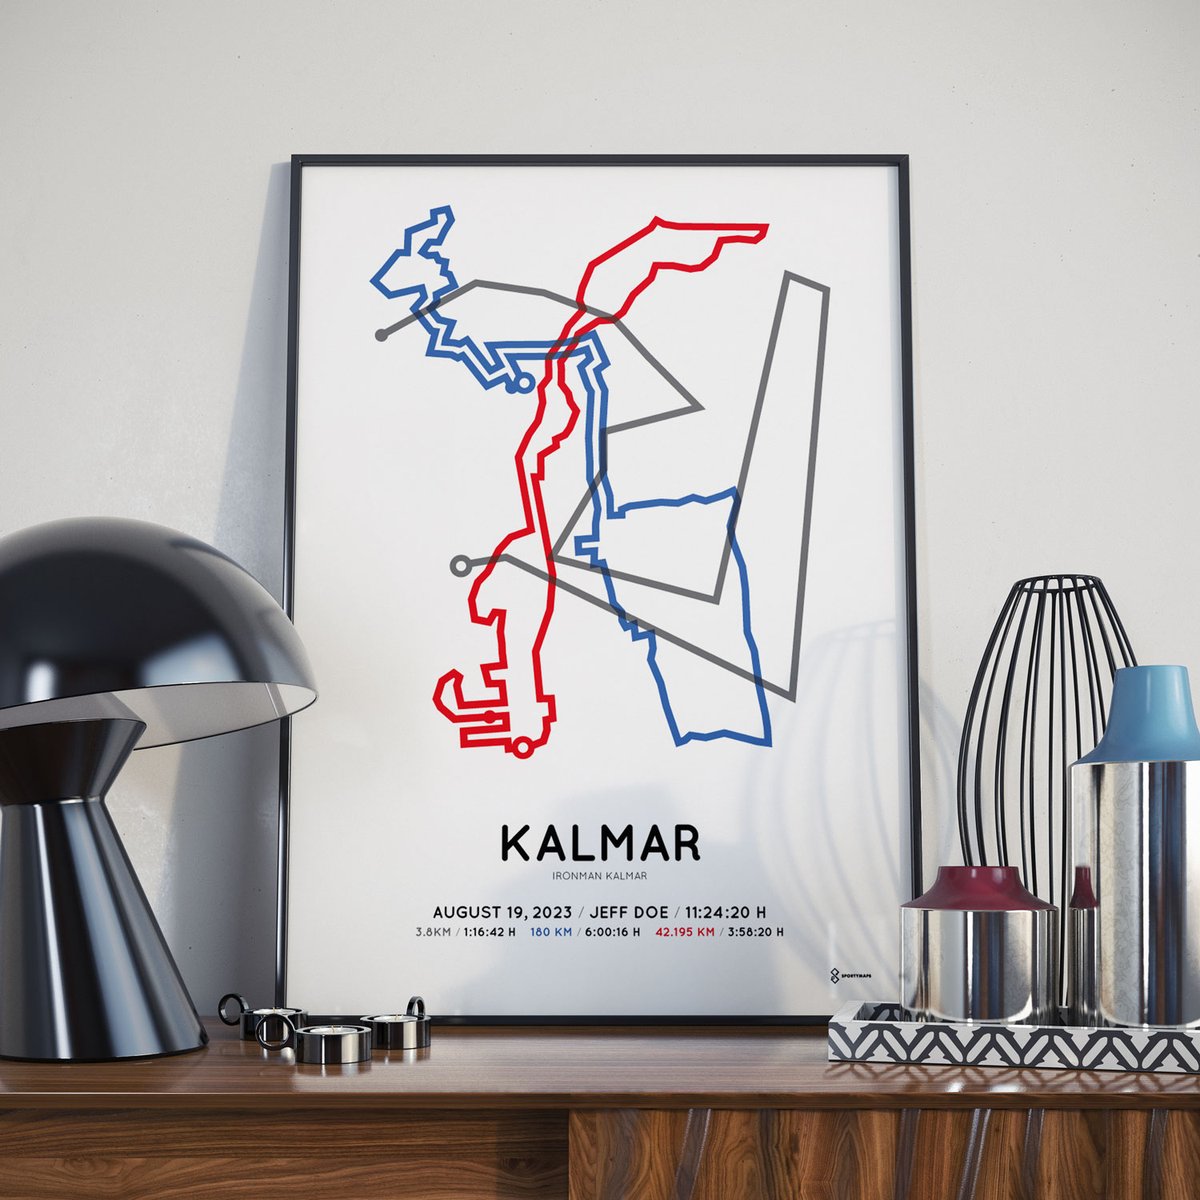 2023 Ironman Kalmar Sportymaps poster!!
#IronmanKalmar #Kalmar #Ironmantri #triathlon #IMKalmar2023 #IM703Kalmar #anythingispossible #tri365 #swimbikerun #triathlete #triathletes #Sportymaps